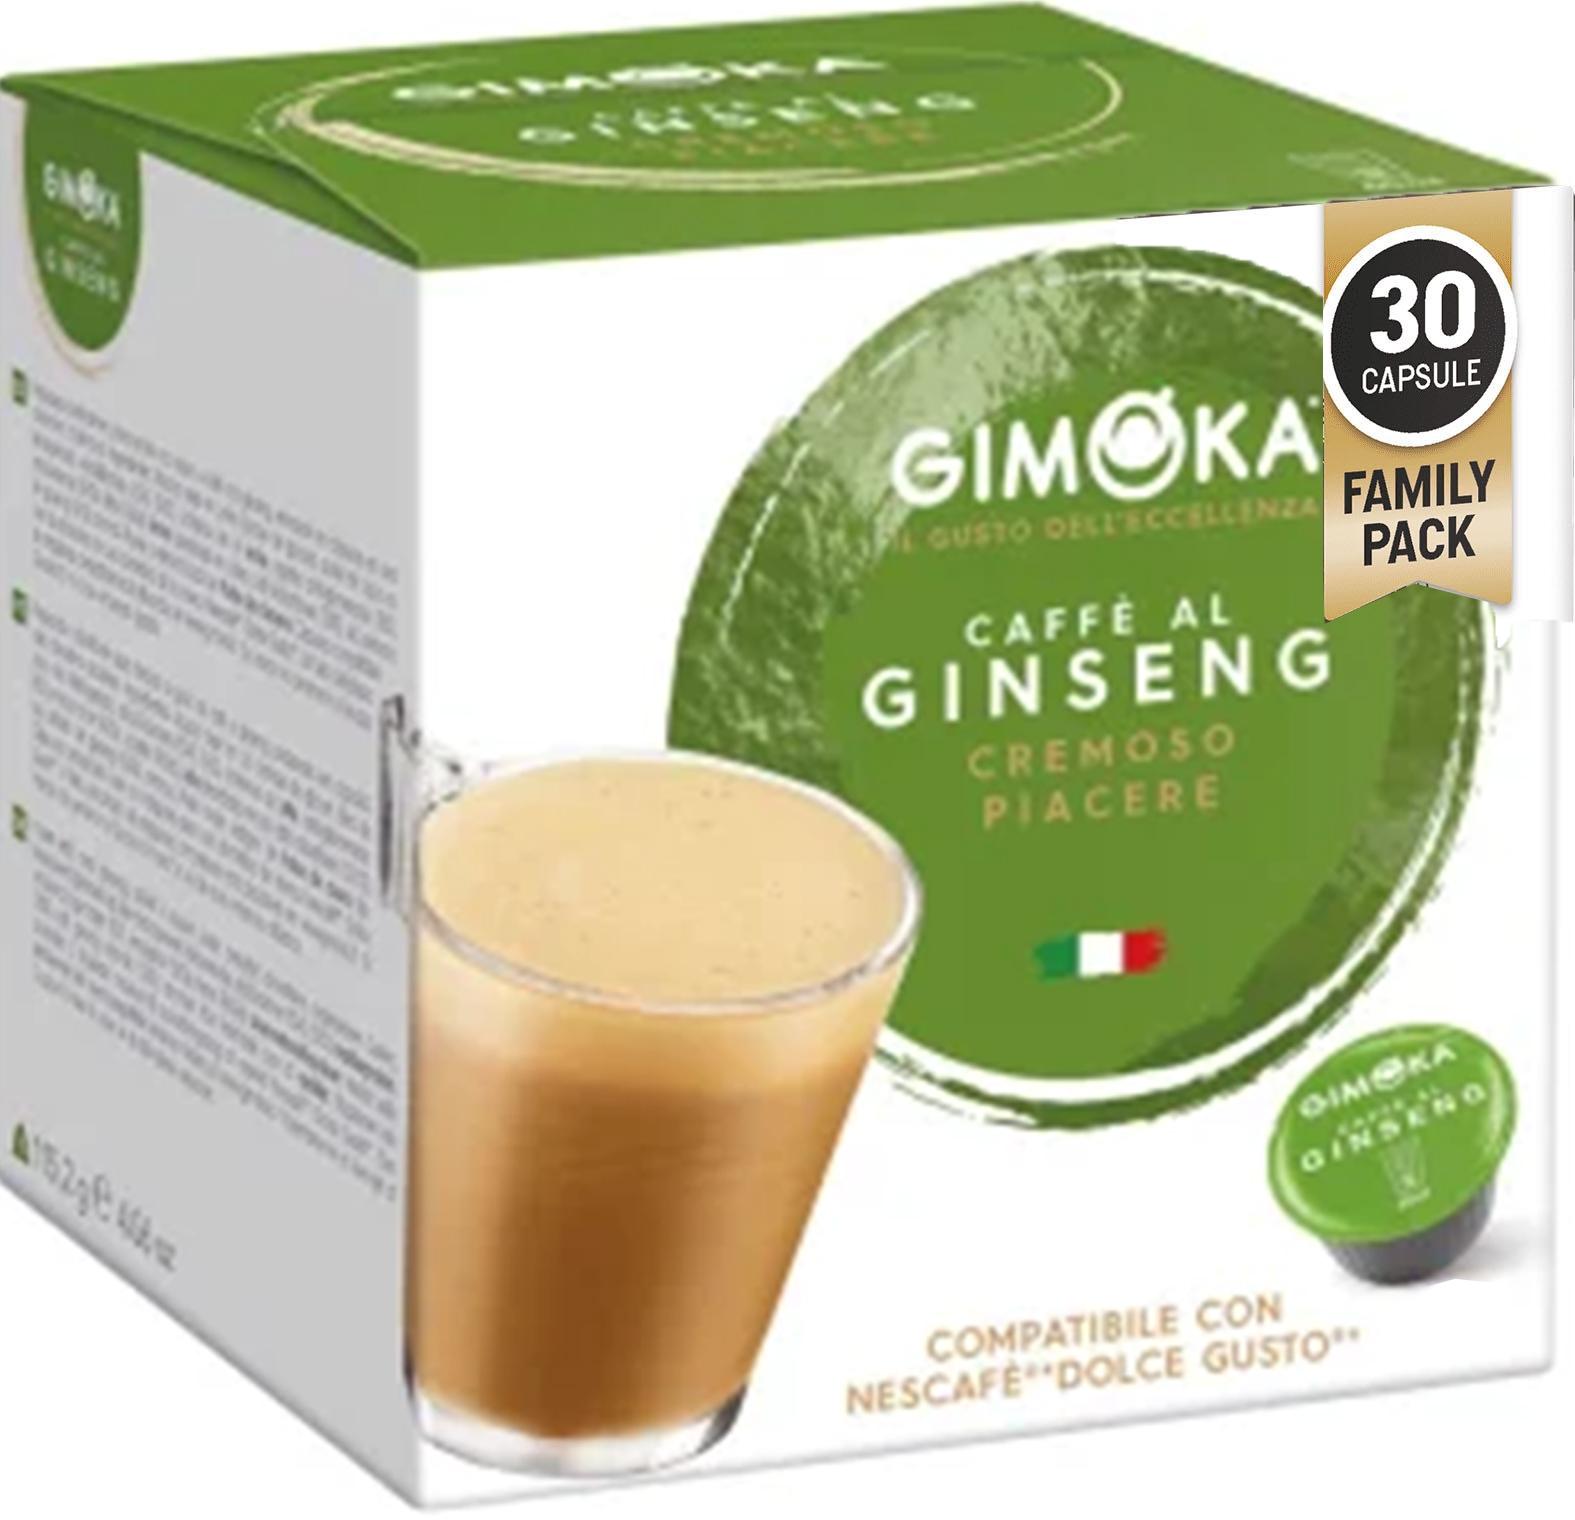 CAFF AL GINSENG - Caja 30 capsulas compatibles DG